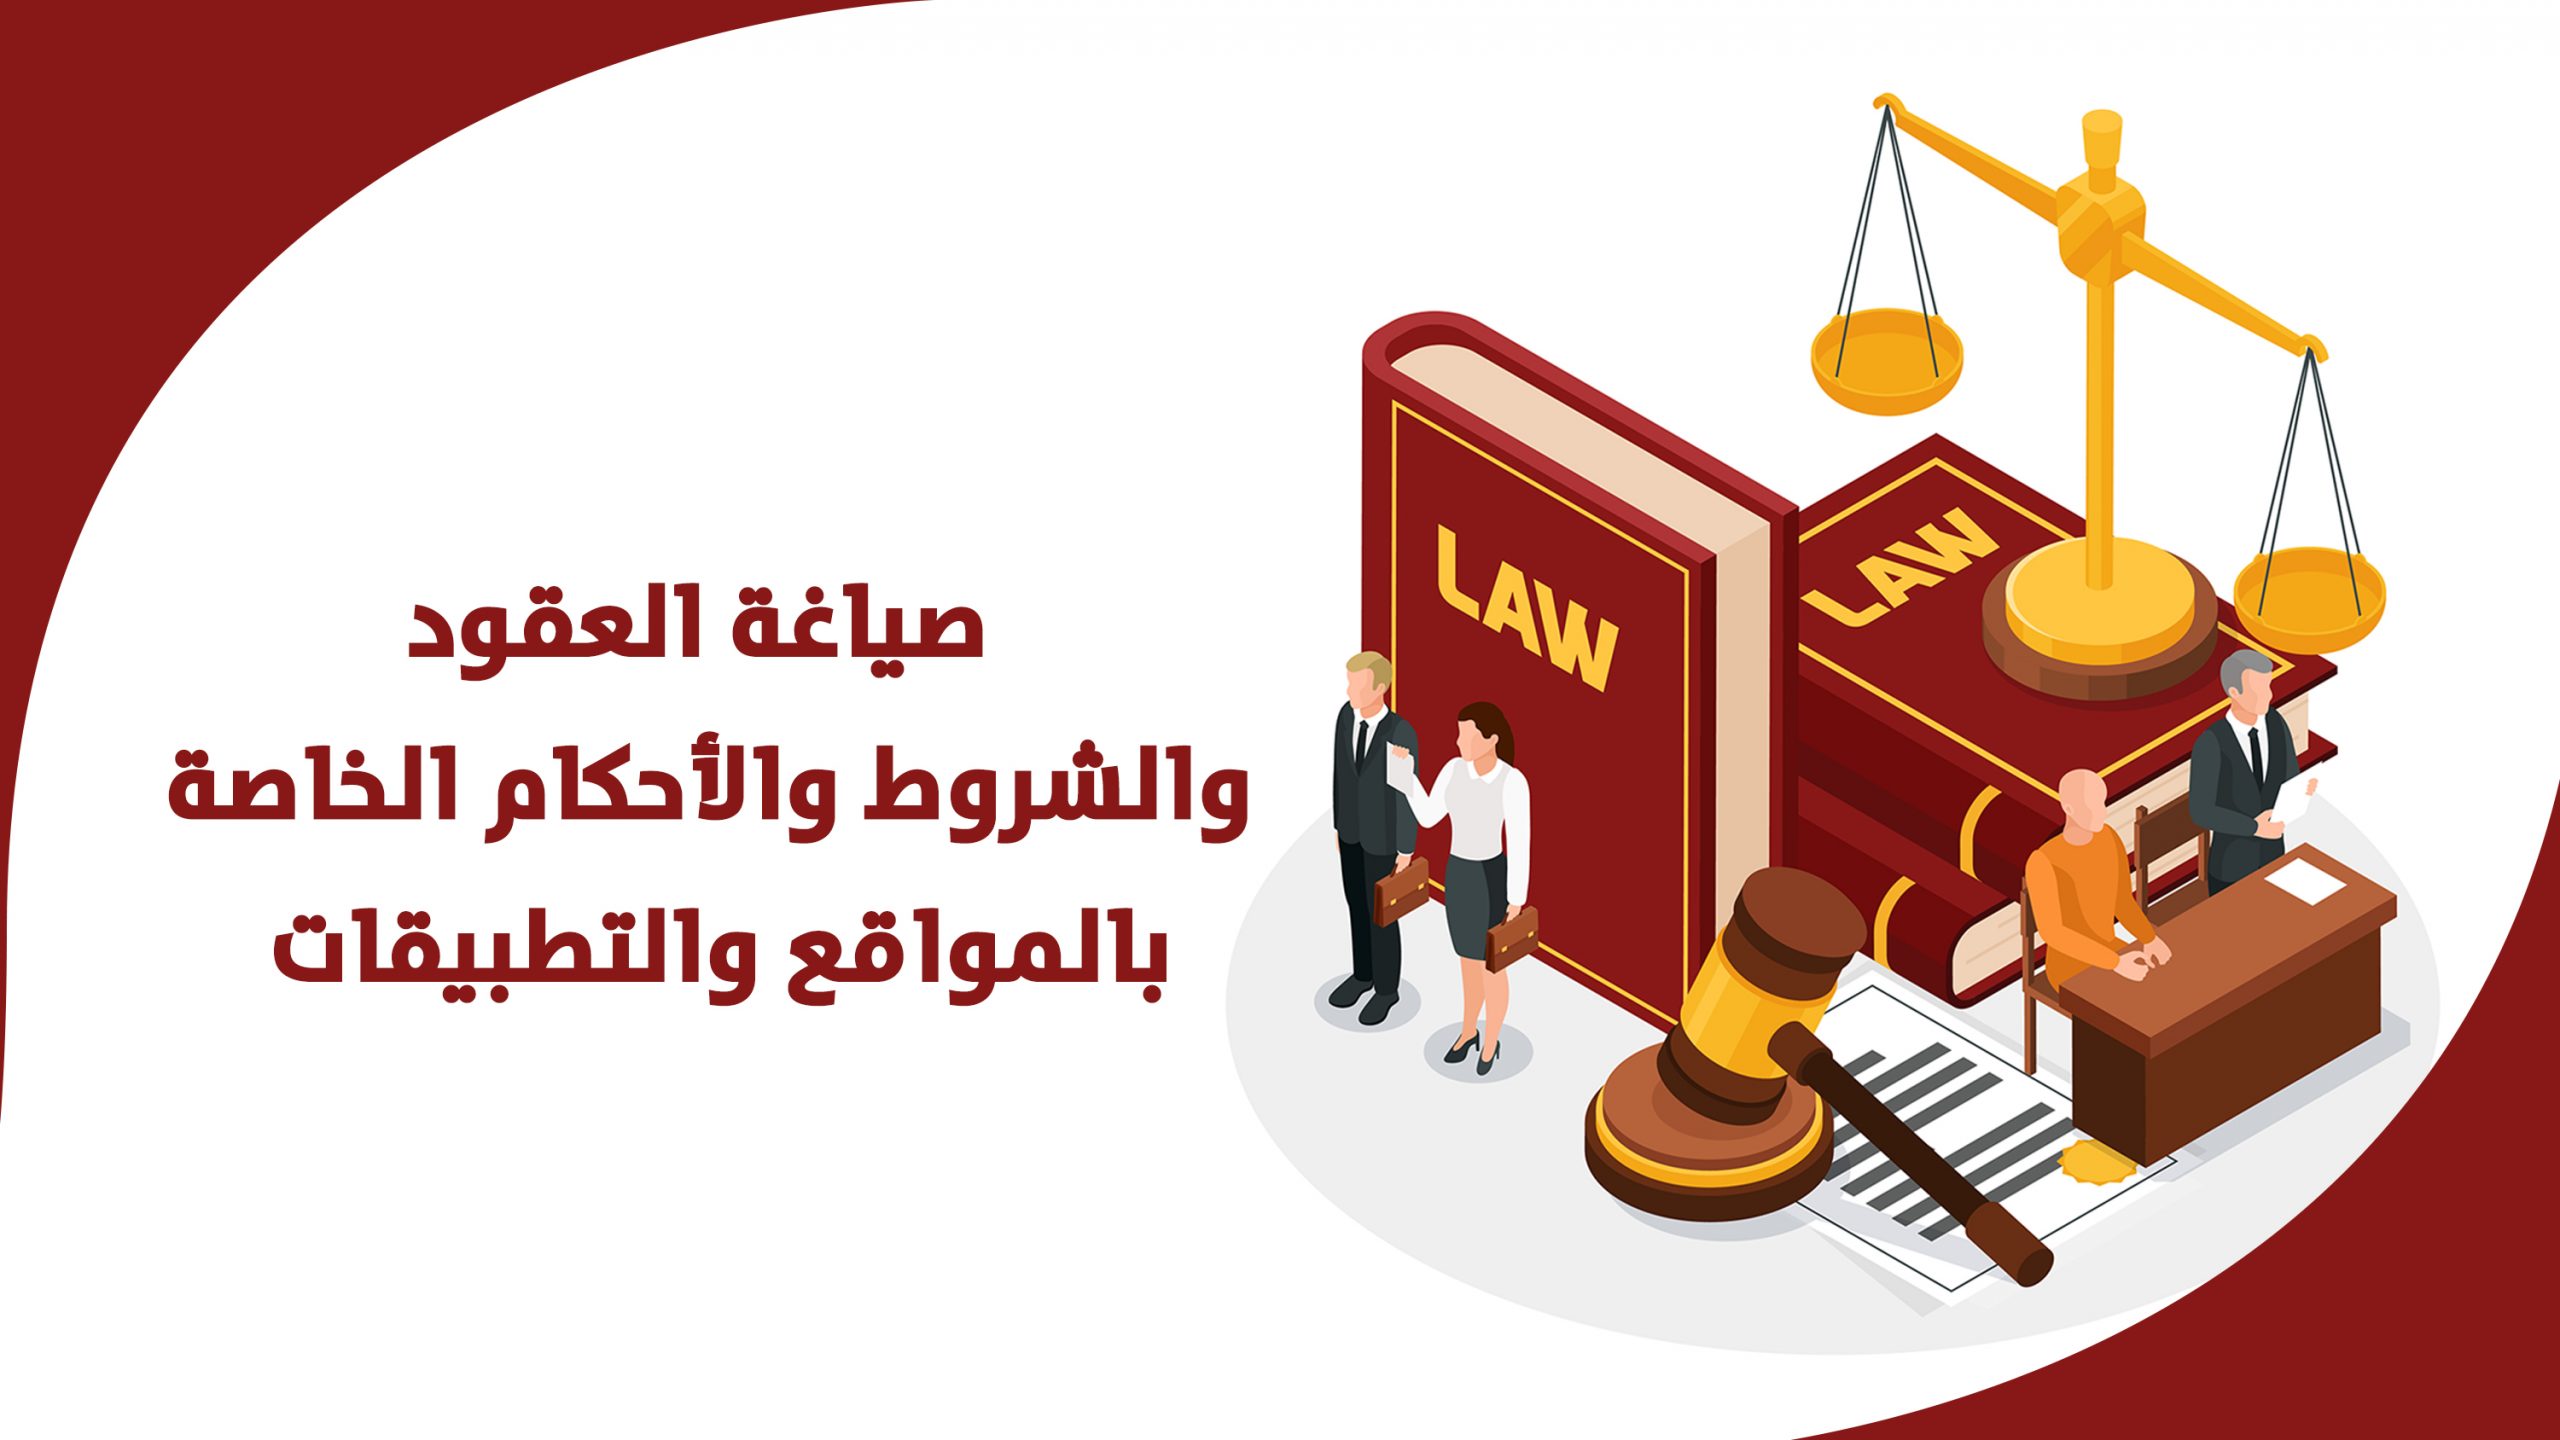 17686استشارات قانونيه -قانون العمل وأبحاث الترقيه بالعمل